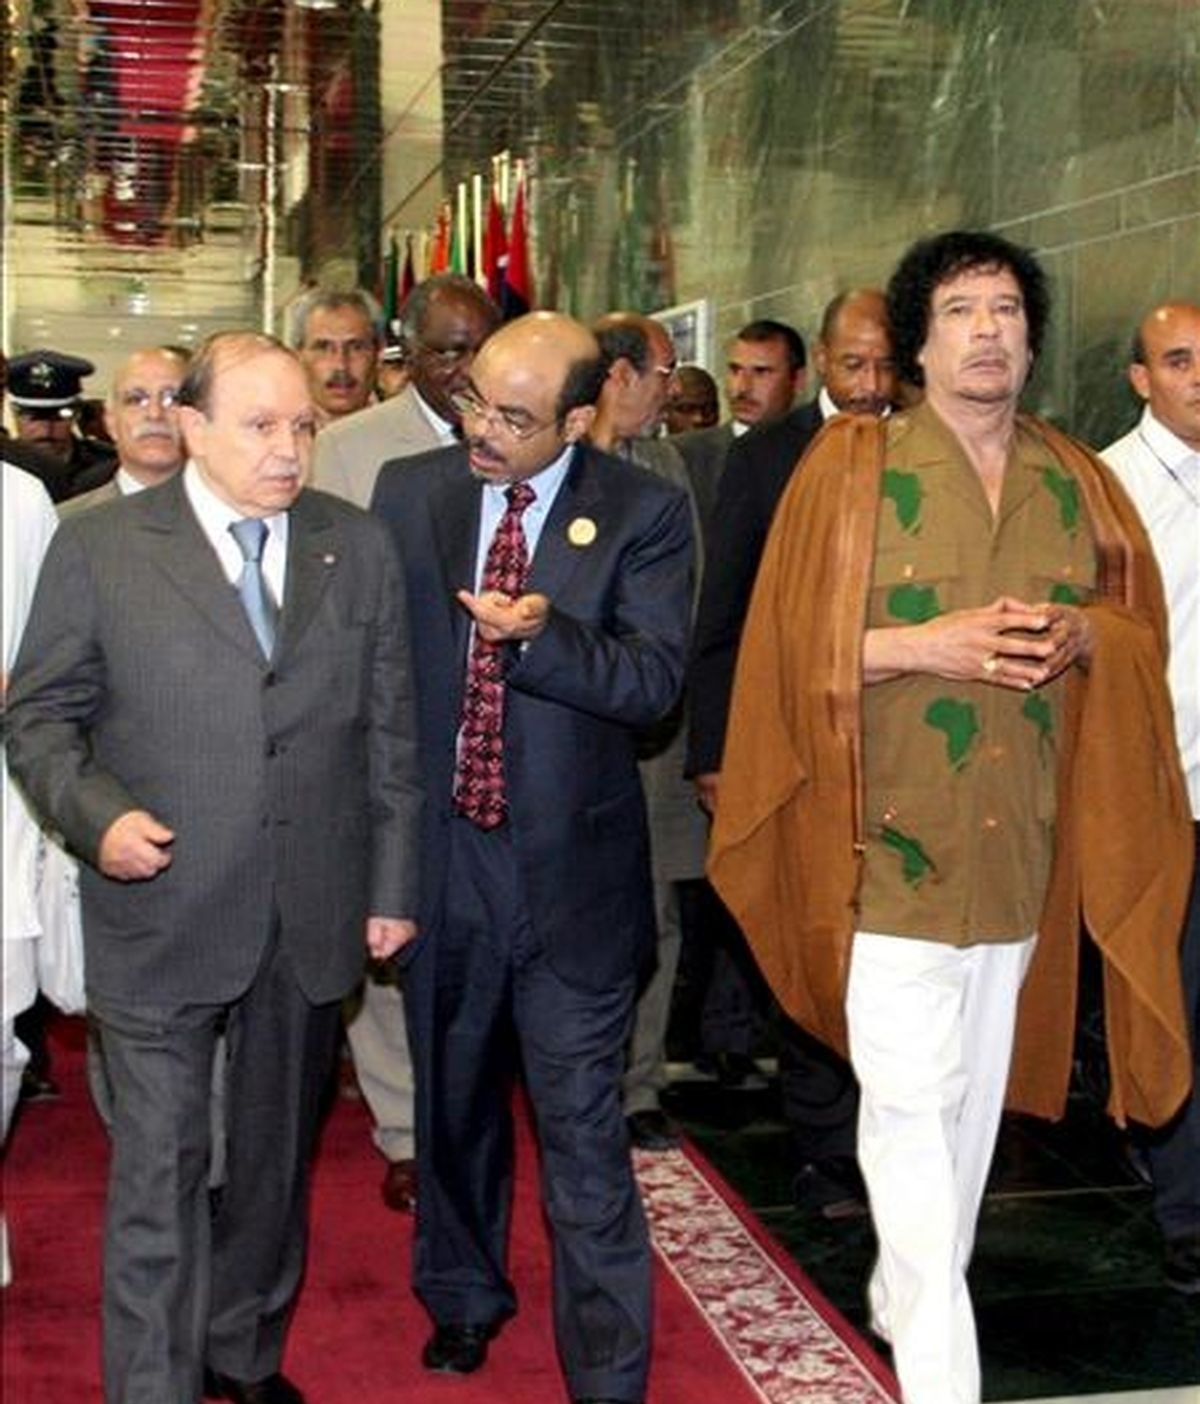 El líder libio y presidente de la Unión Africana, Muamar Gadafi (d), y el presidente de Argelia, Abdelaziz Bouteflika (i), a su llegada ayer a la vigésimo primera cumbre del Comité de Dirección de la Nueva Asociación para el Desarrollo de África (NEPAD), que se celebró en Sirte, Libia. EFE